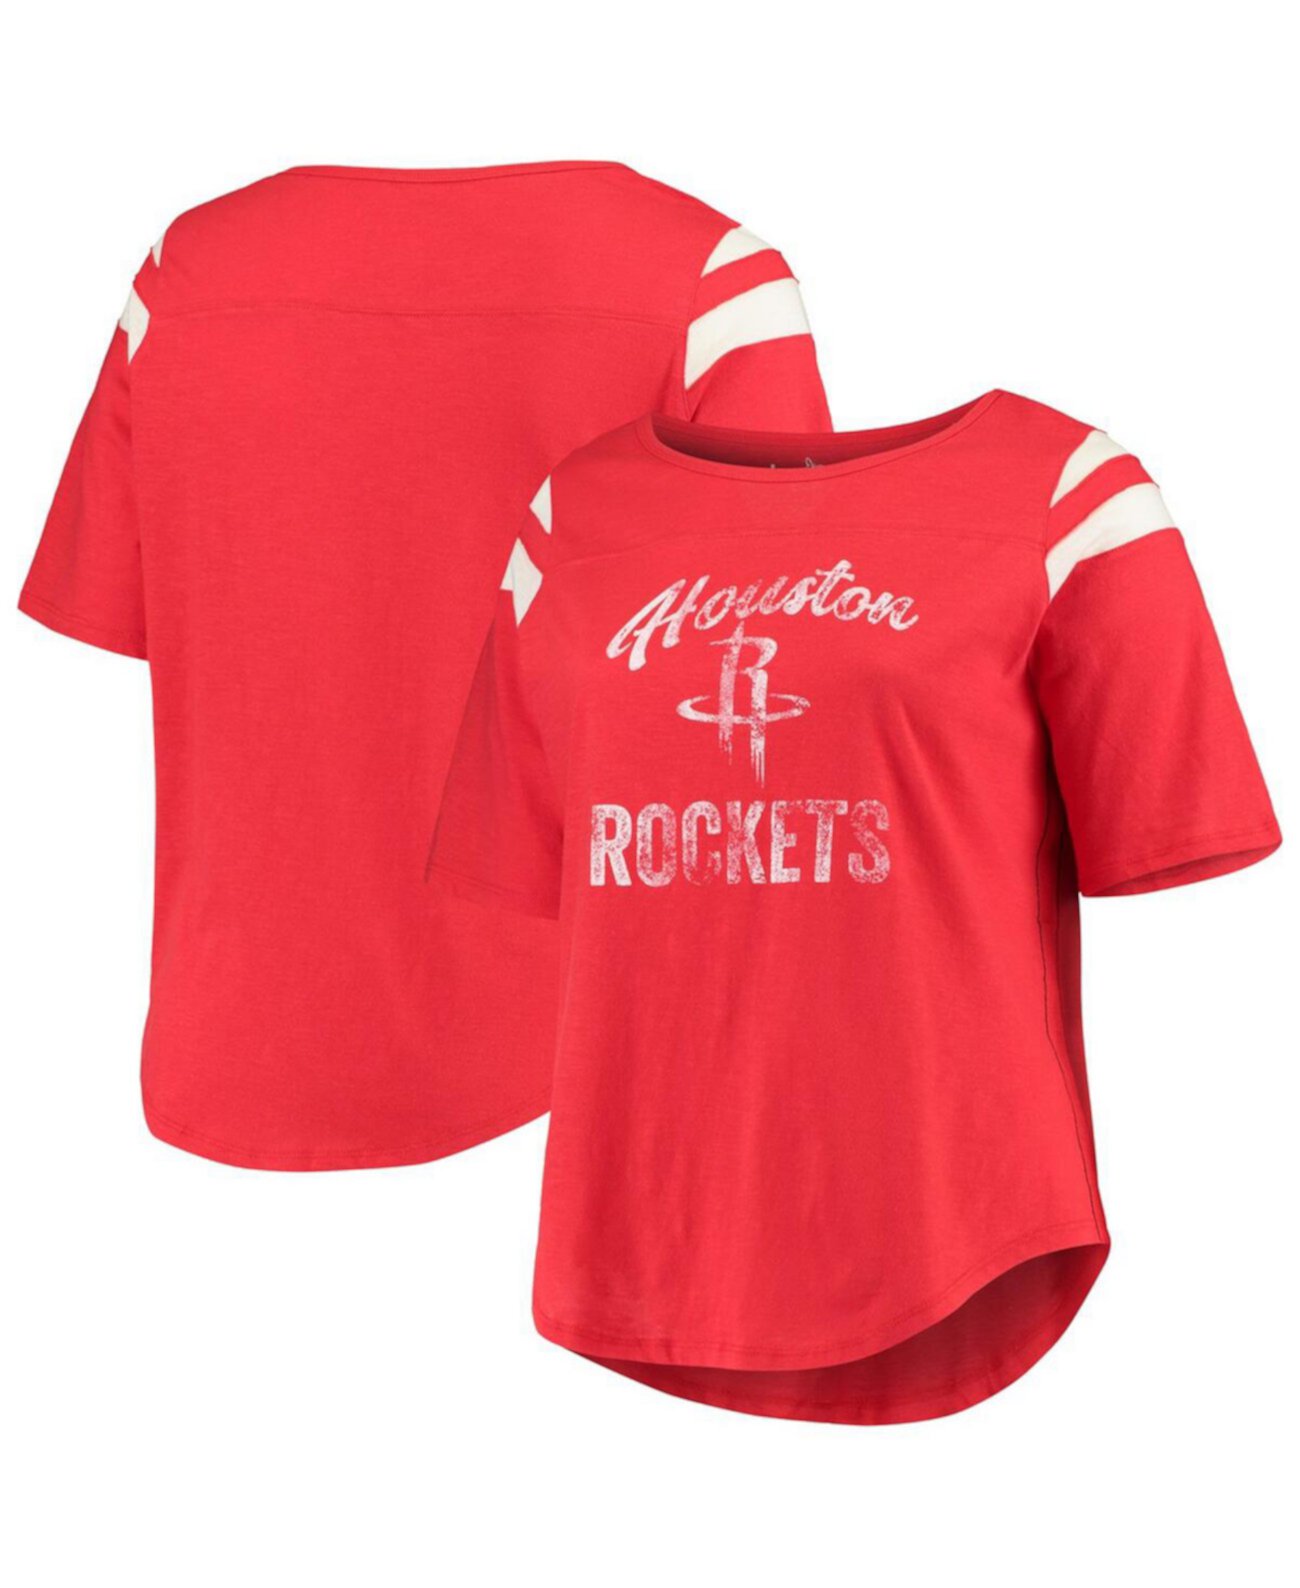 Женская красно-белая футболка из джерси с рукавами 3/4 Houston Rockets большого размера разыгрывающего защитника Touch